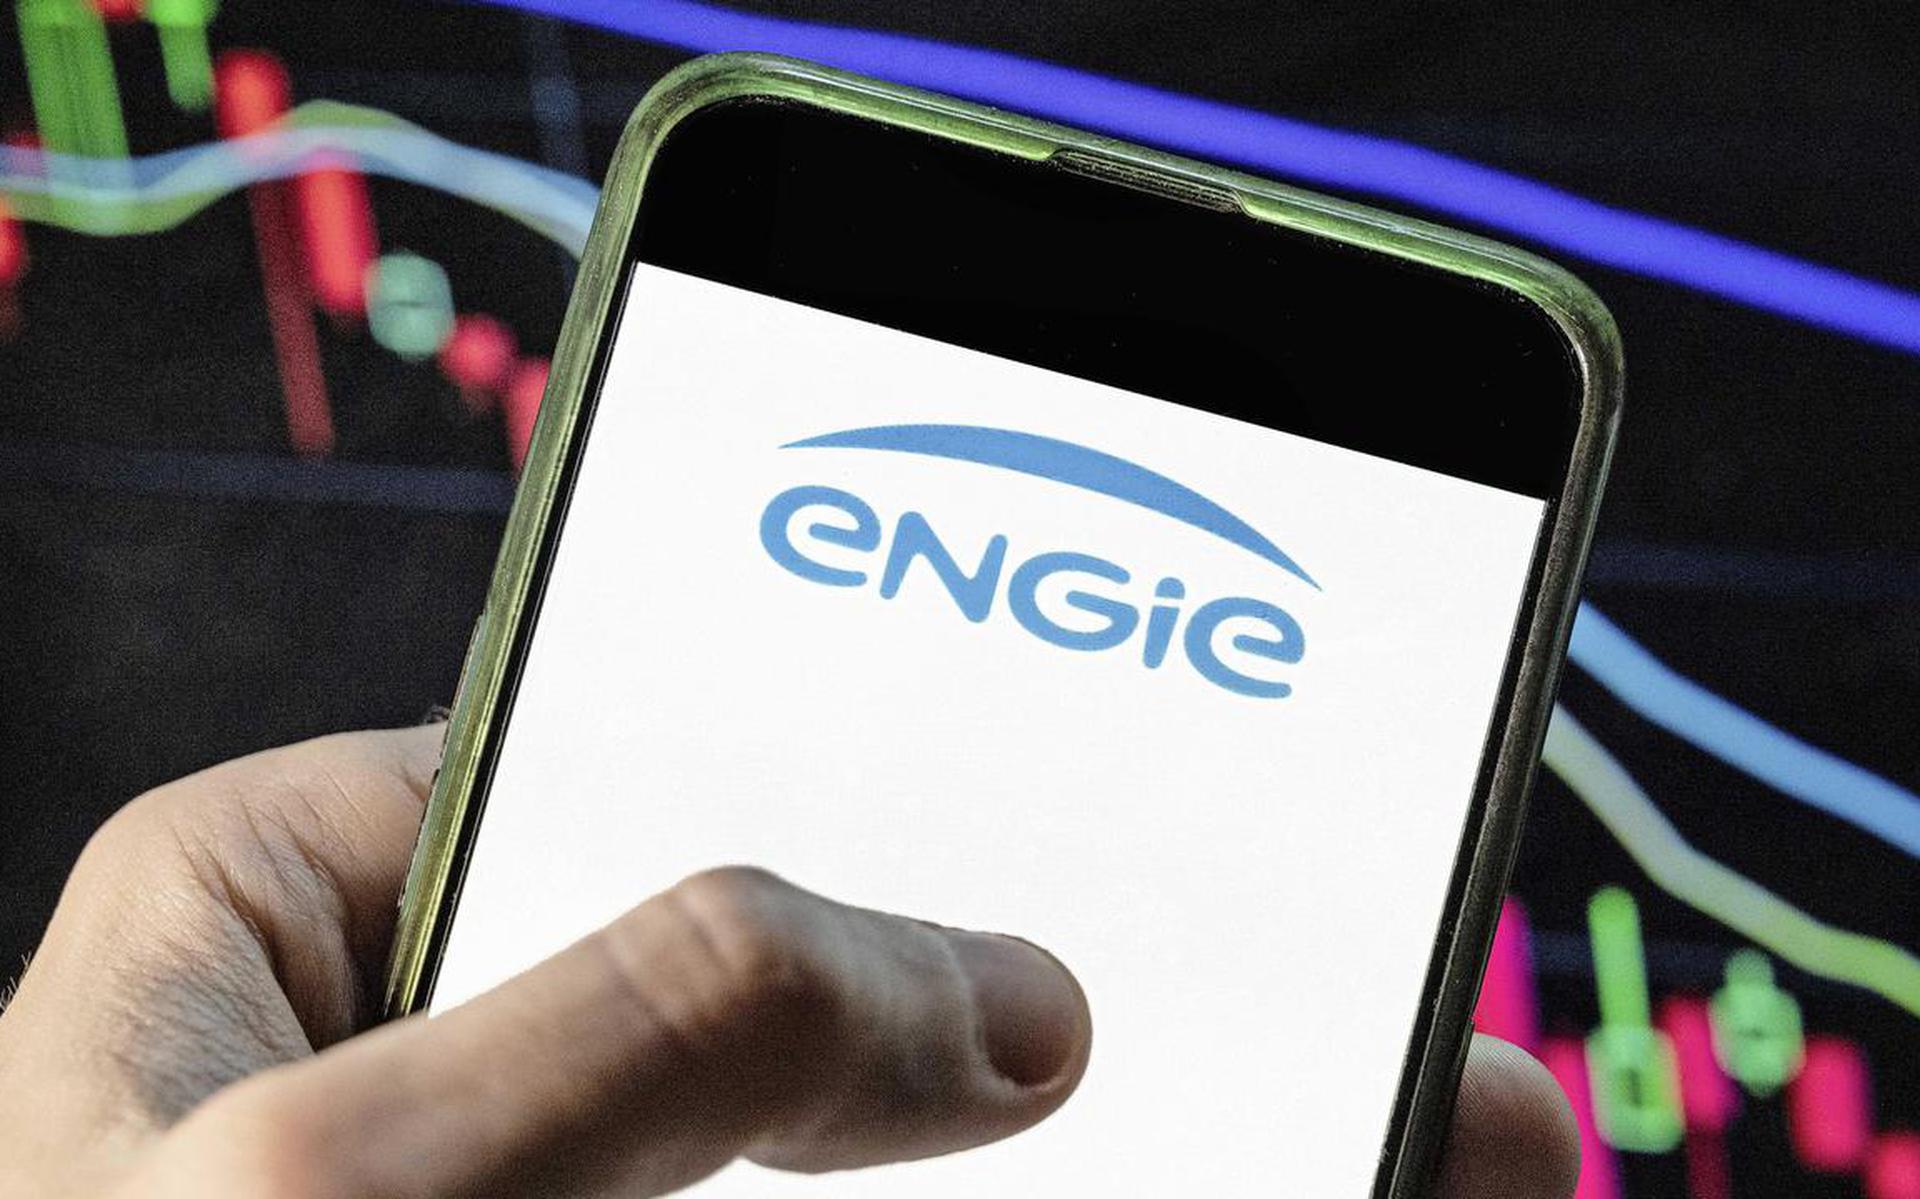 Volgens Engie is de uitbetaling van de compensatie voor de hoge energieprijzen vertraagd door een technische storing.